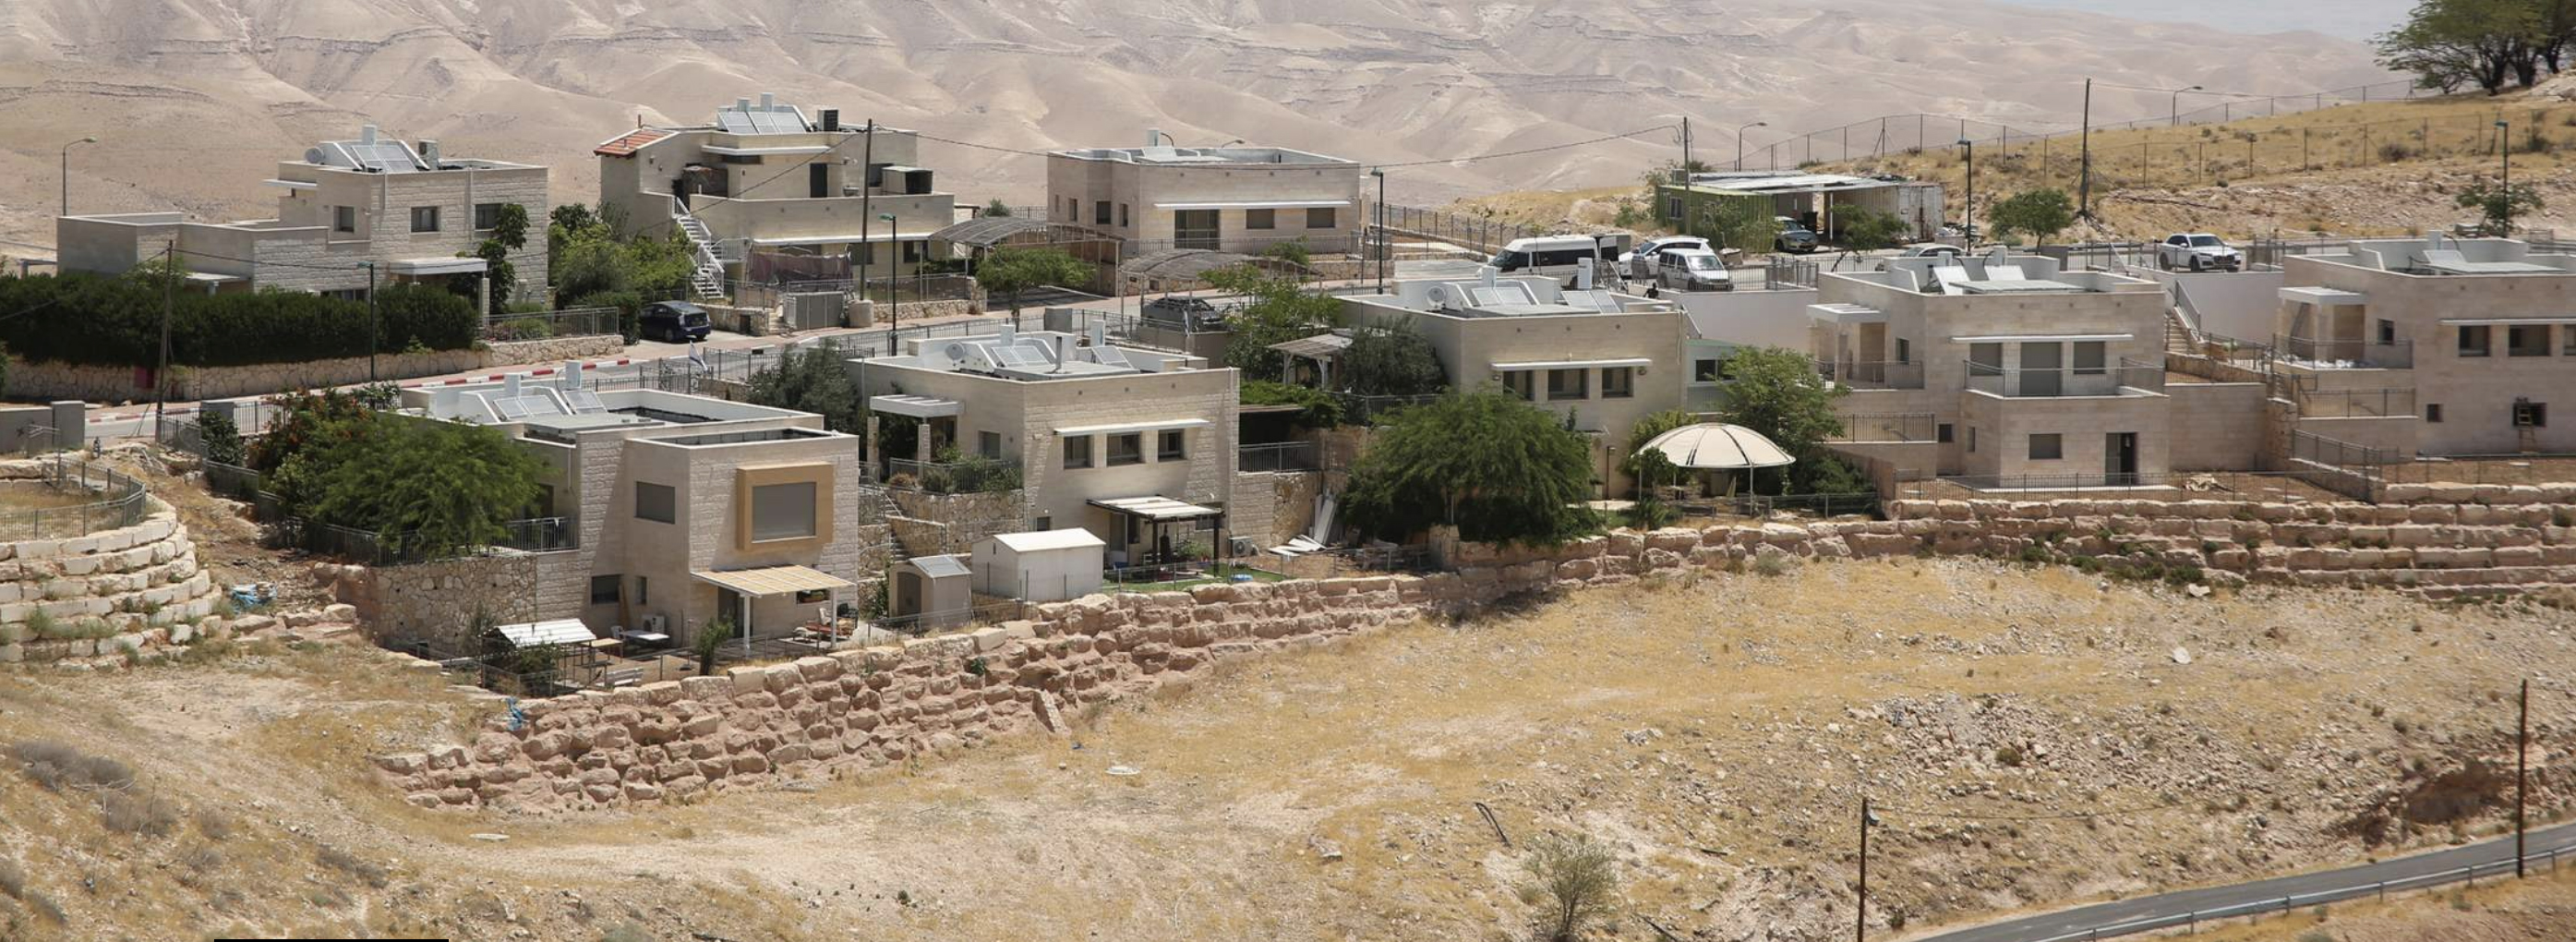 Il database ONU delle aziende che operano negli insediamenti israeliani potrebbe aiutare a prevenire le violazioni dei diritti umani.